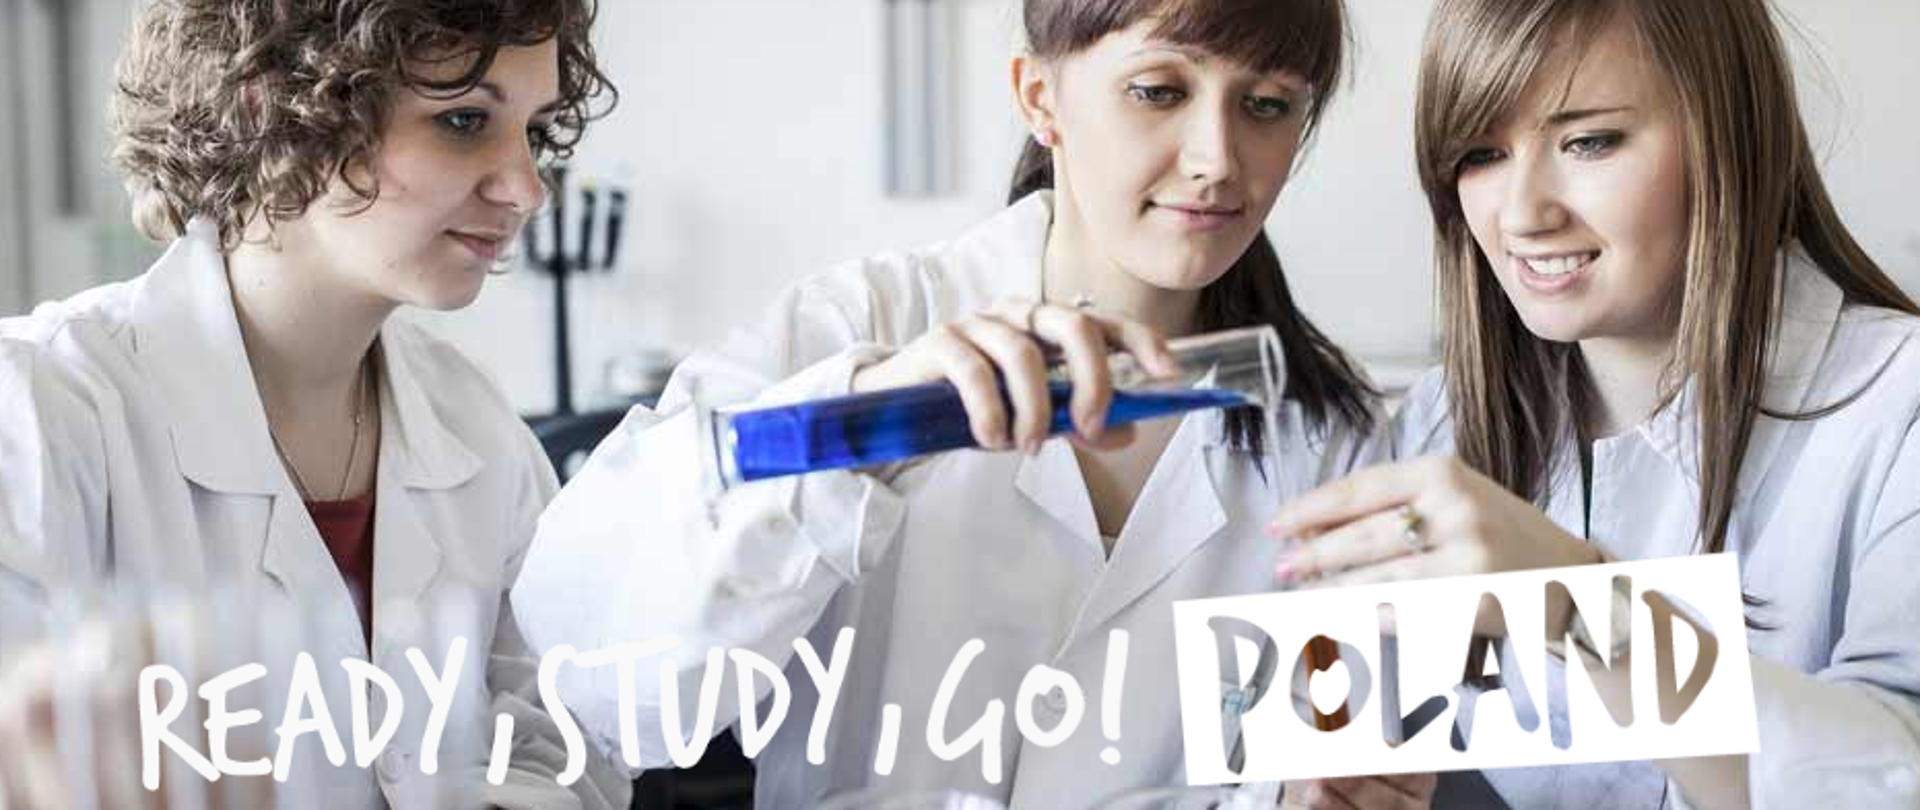 Trzy studentki farmacji w laboratorium prowadzą eksperymenty